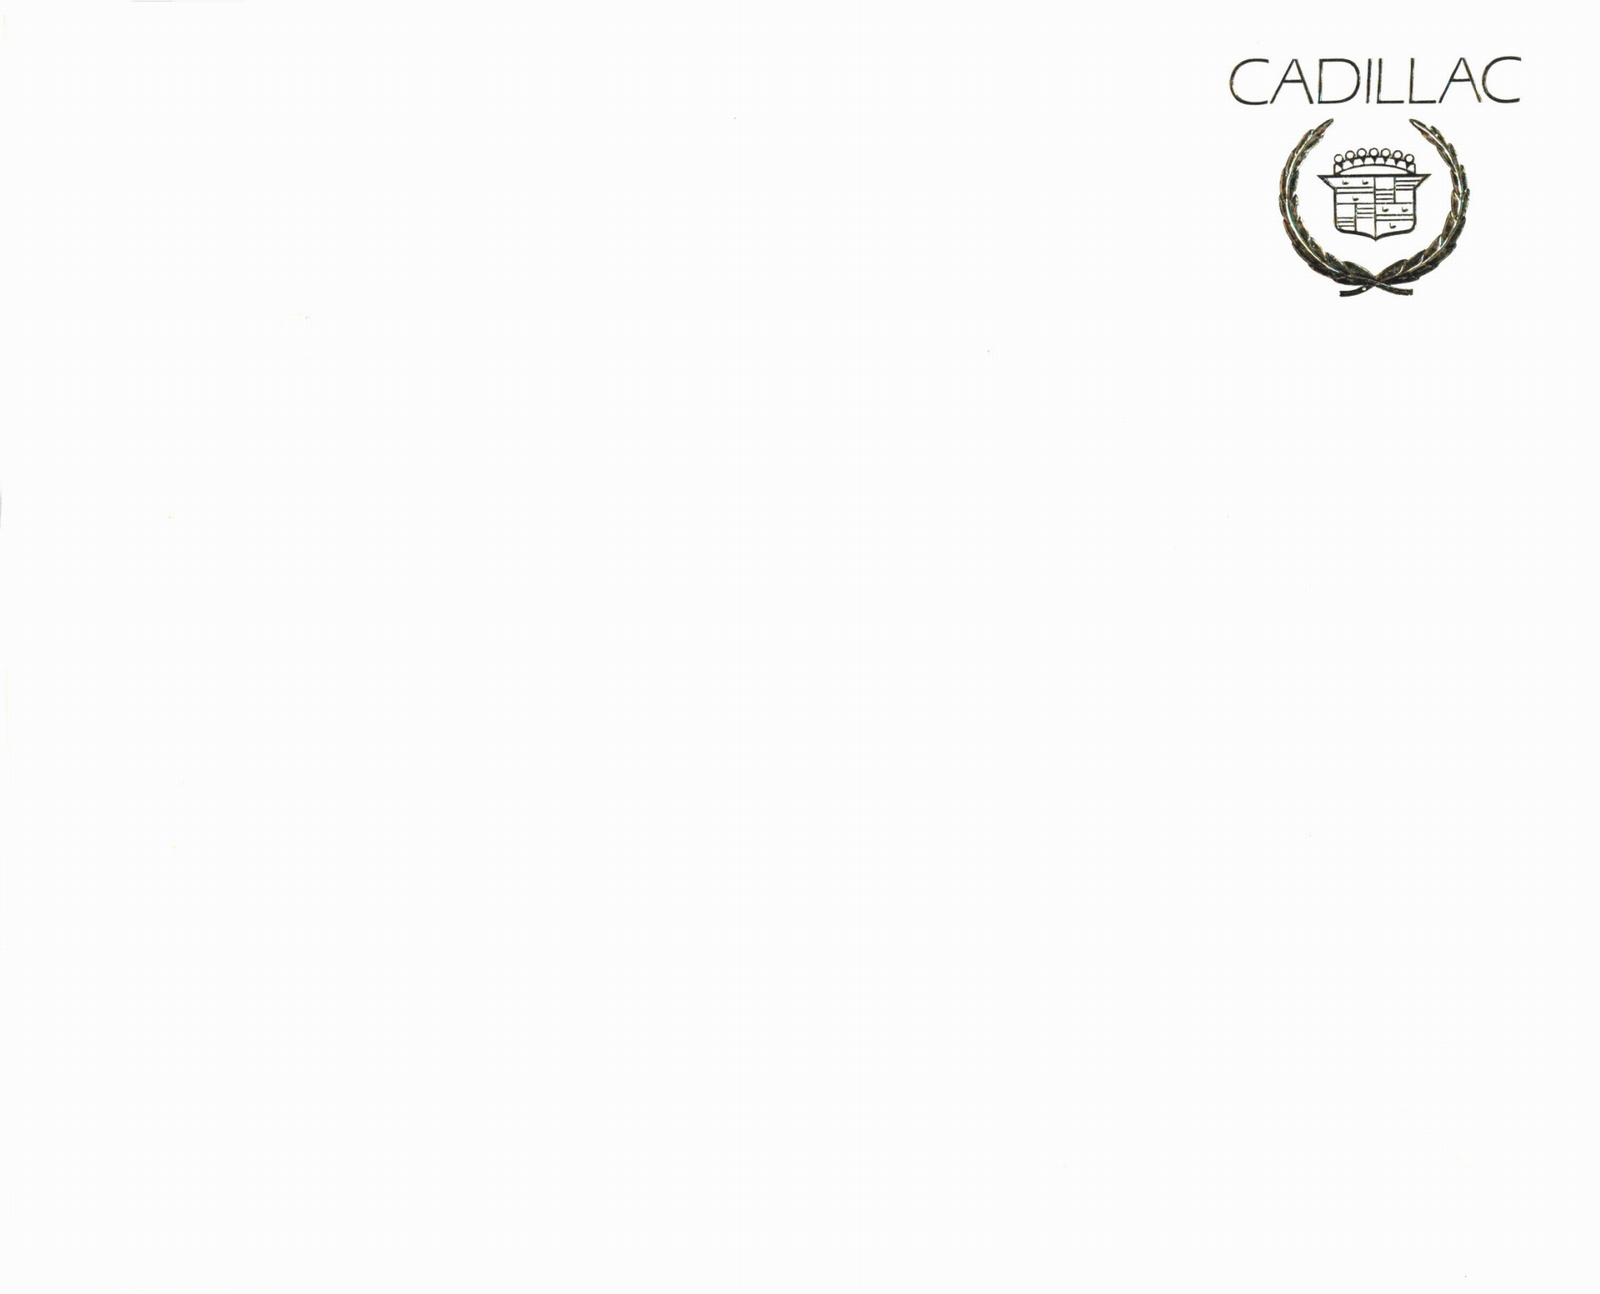 n_1984 Cadillac Full Line Prestige (Cdn)-00.jpg